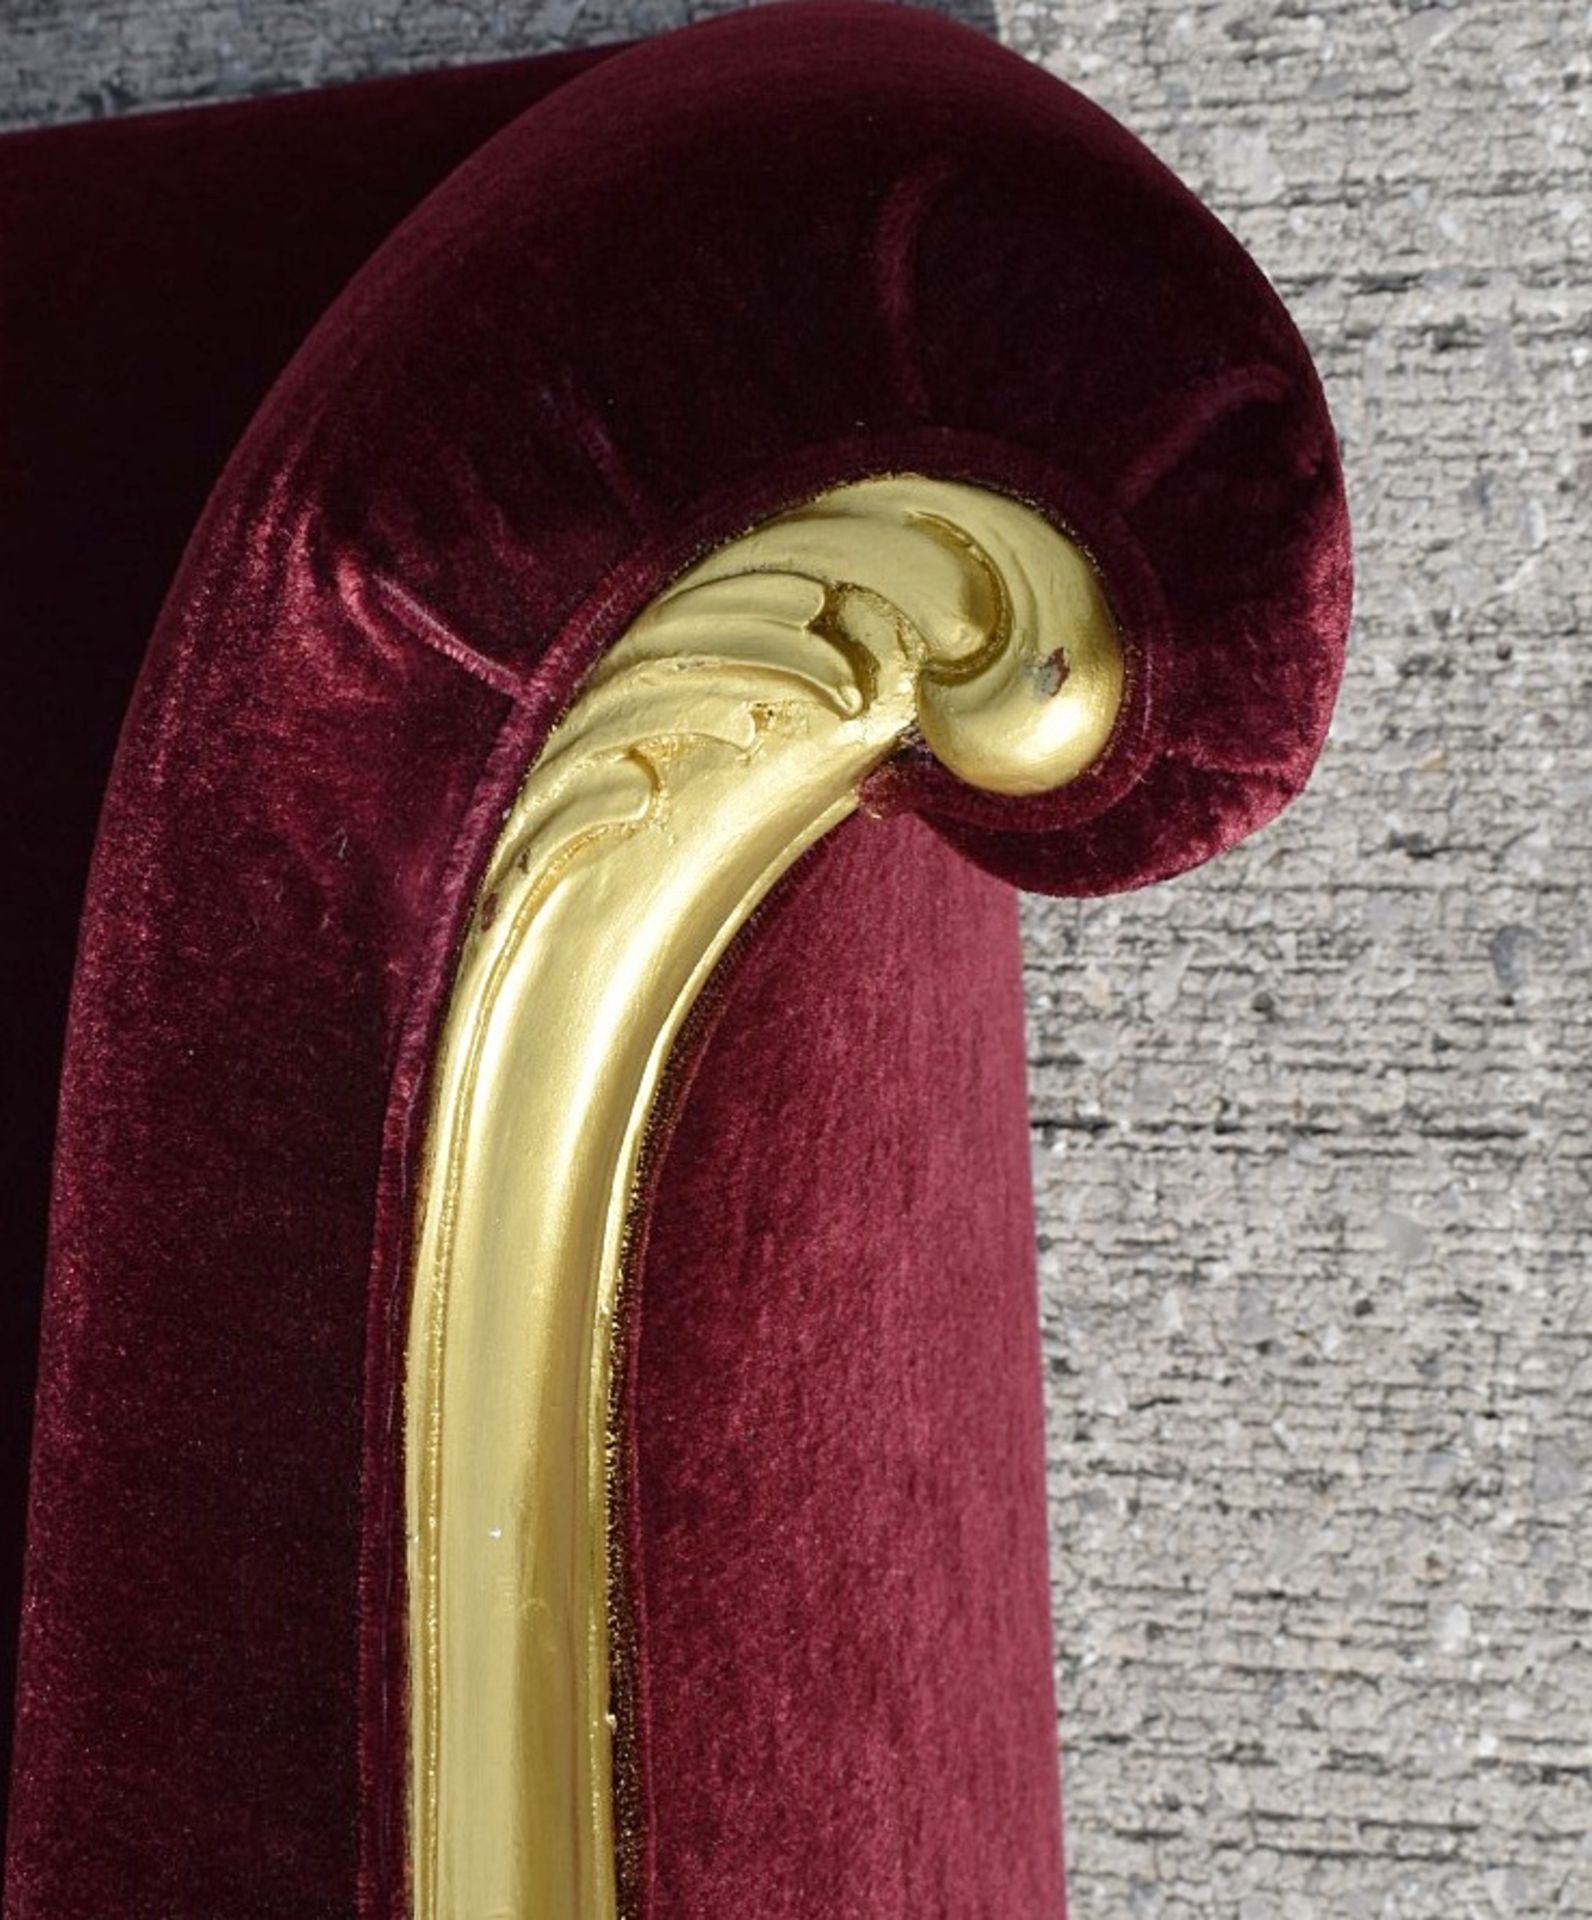 1 x CHRISTOPHER GUY Bespoke Opulent Velvet Upholstered Oversized Armchair - Original Price £4,000 - Image 10 of 10